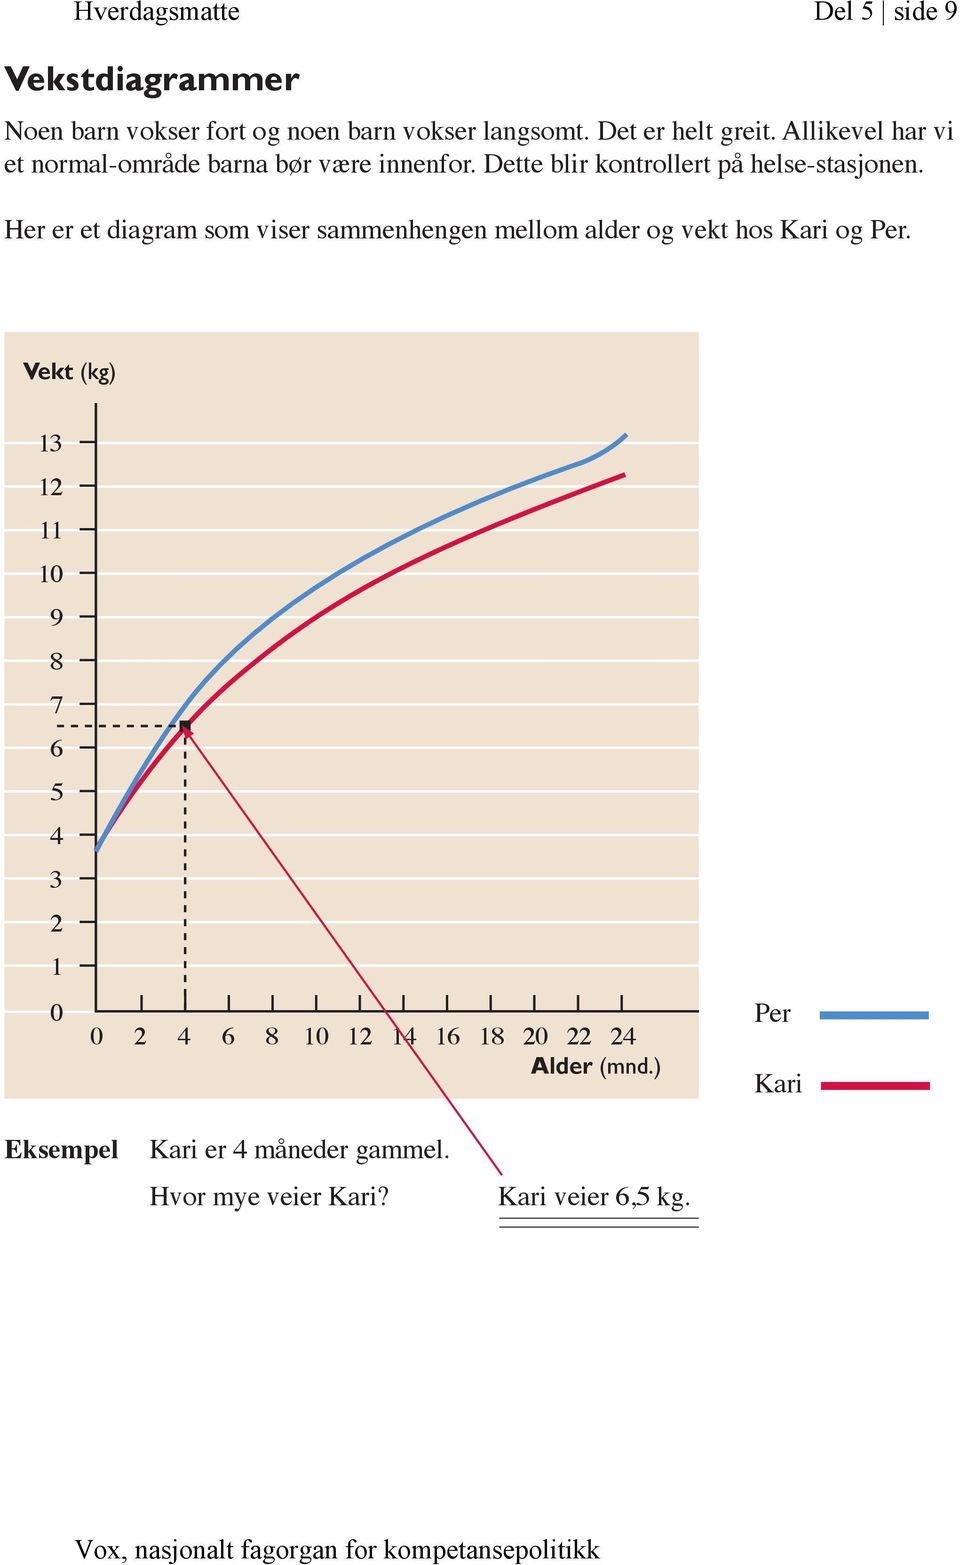 Her er et diagram som viser sammenhengen mellom alder og vekt hos Kari og Per.